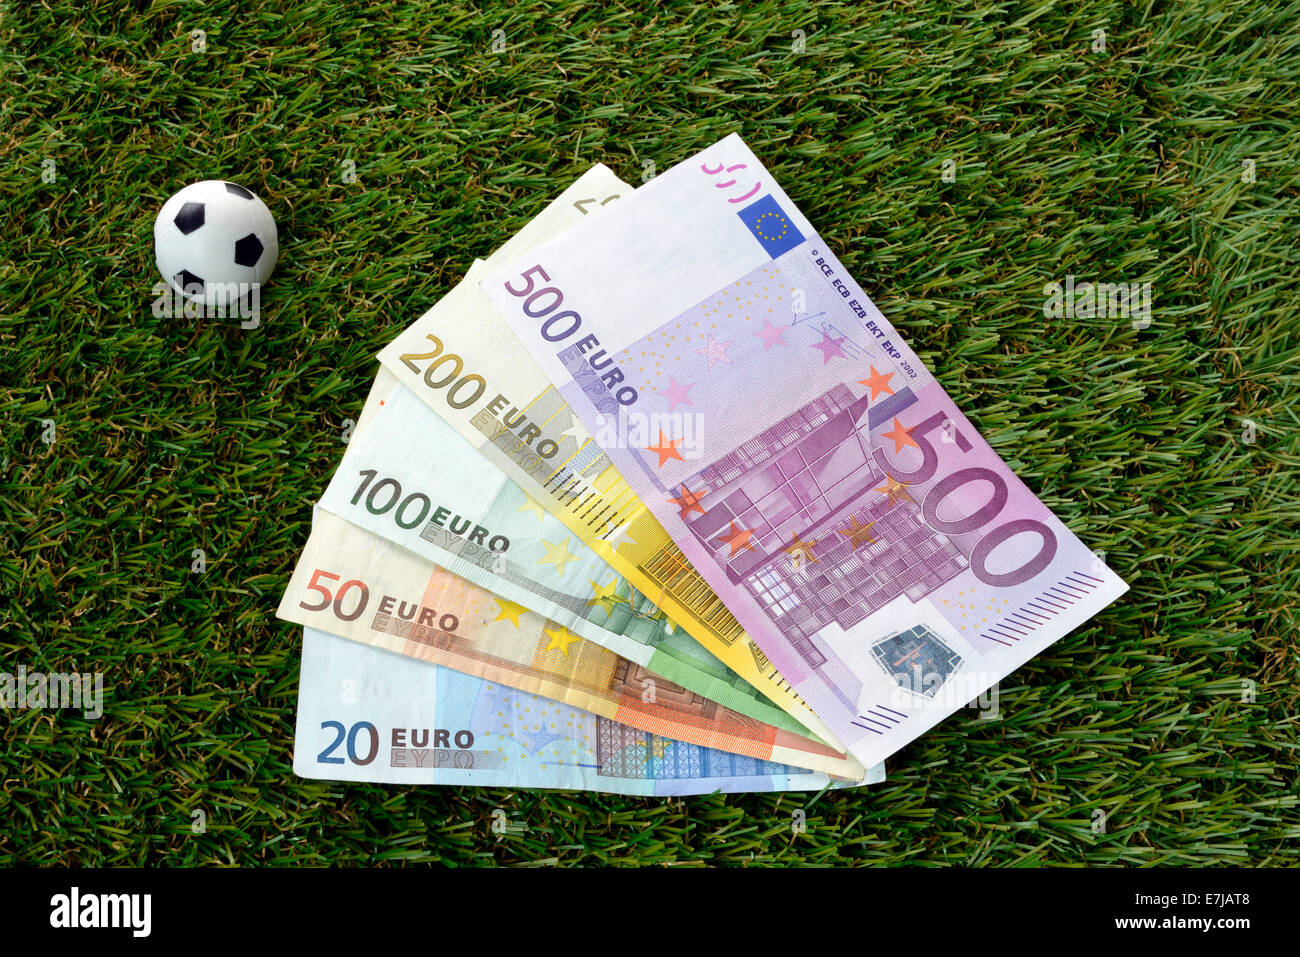 Euro notes, soccer balls Stock Photo